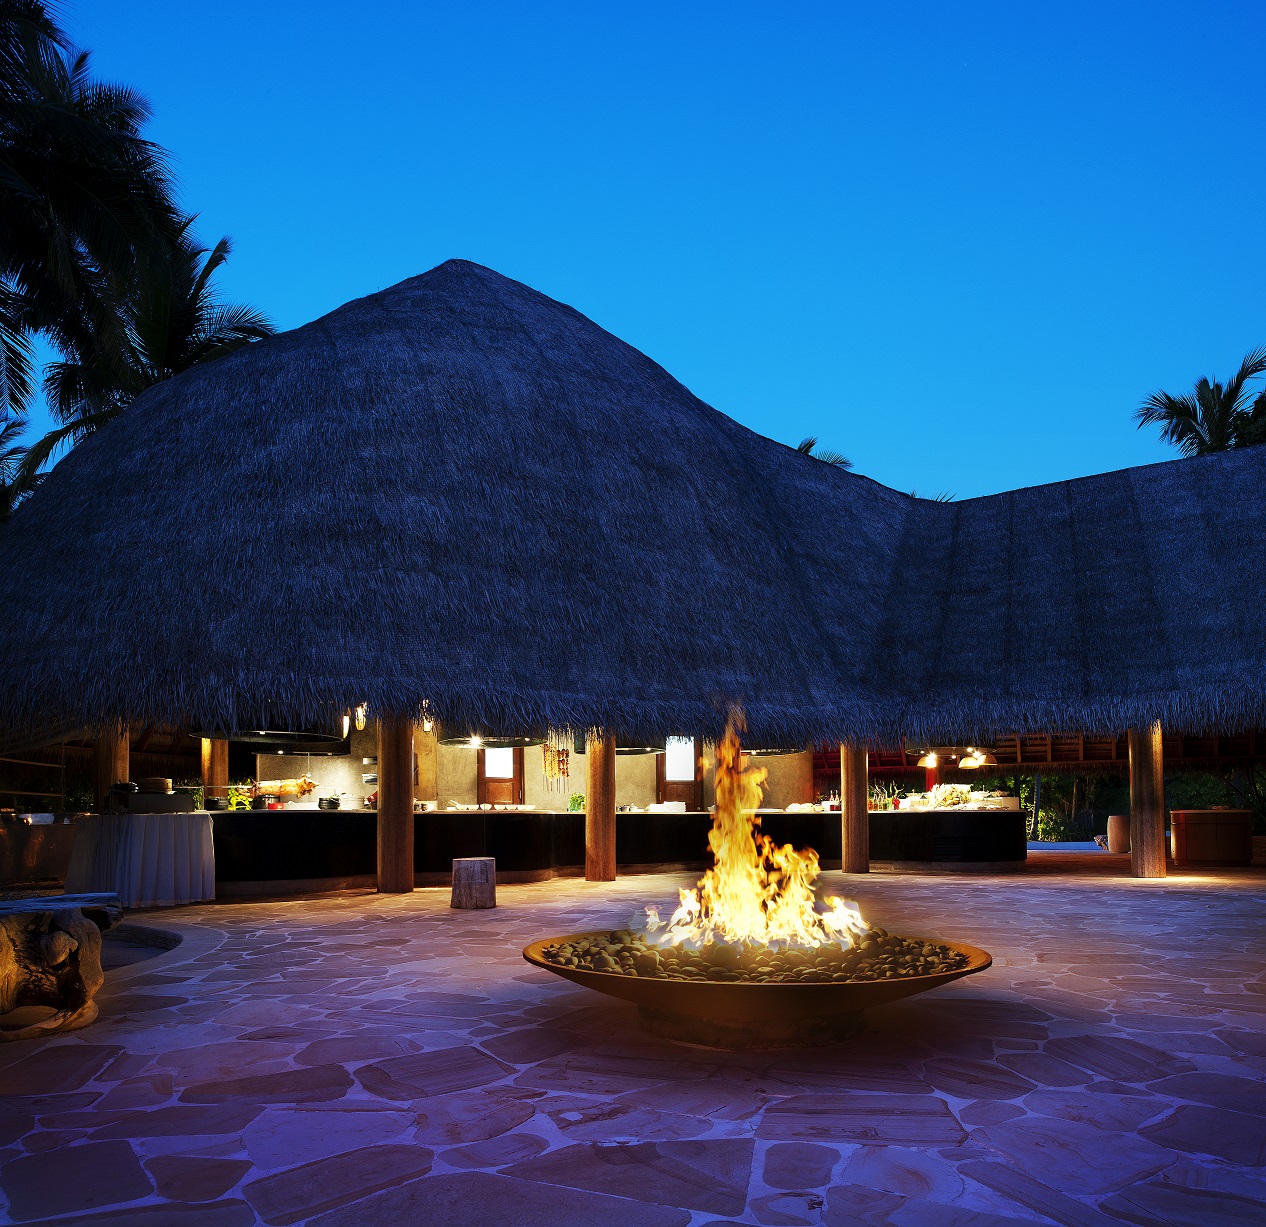 فندق دبليو جزر المالديف يدعوكم للاحتفال بعيد الاضحى المبارك مع باقات عروضهِ المتنوعة